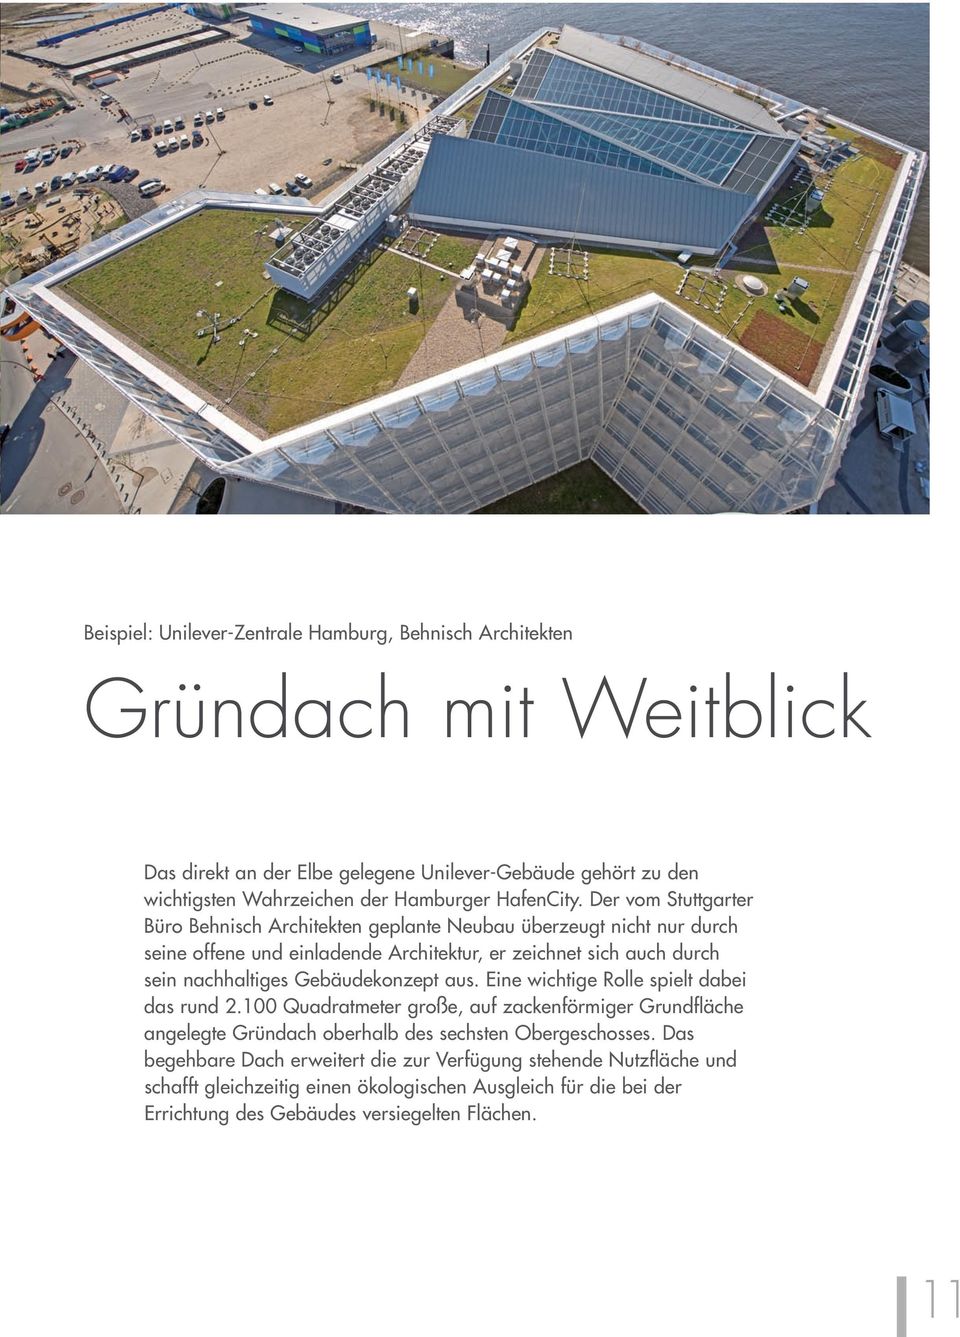 Der vom Stuttgarter Büro Behnisch Architekten geplante Neubau überzeugt nicht nur durch seine offene und einladende Architektur, er zeichnet sich auch durch sein nachhaltiges